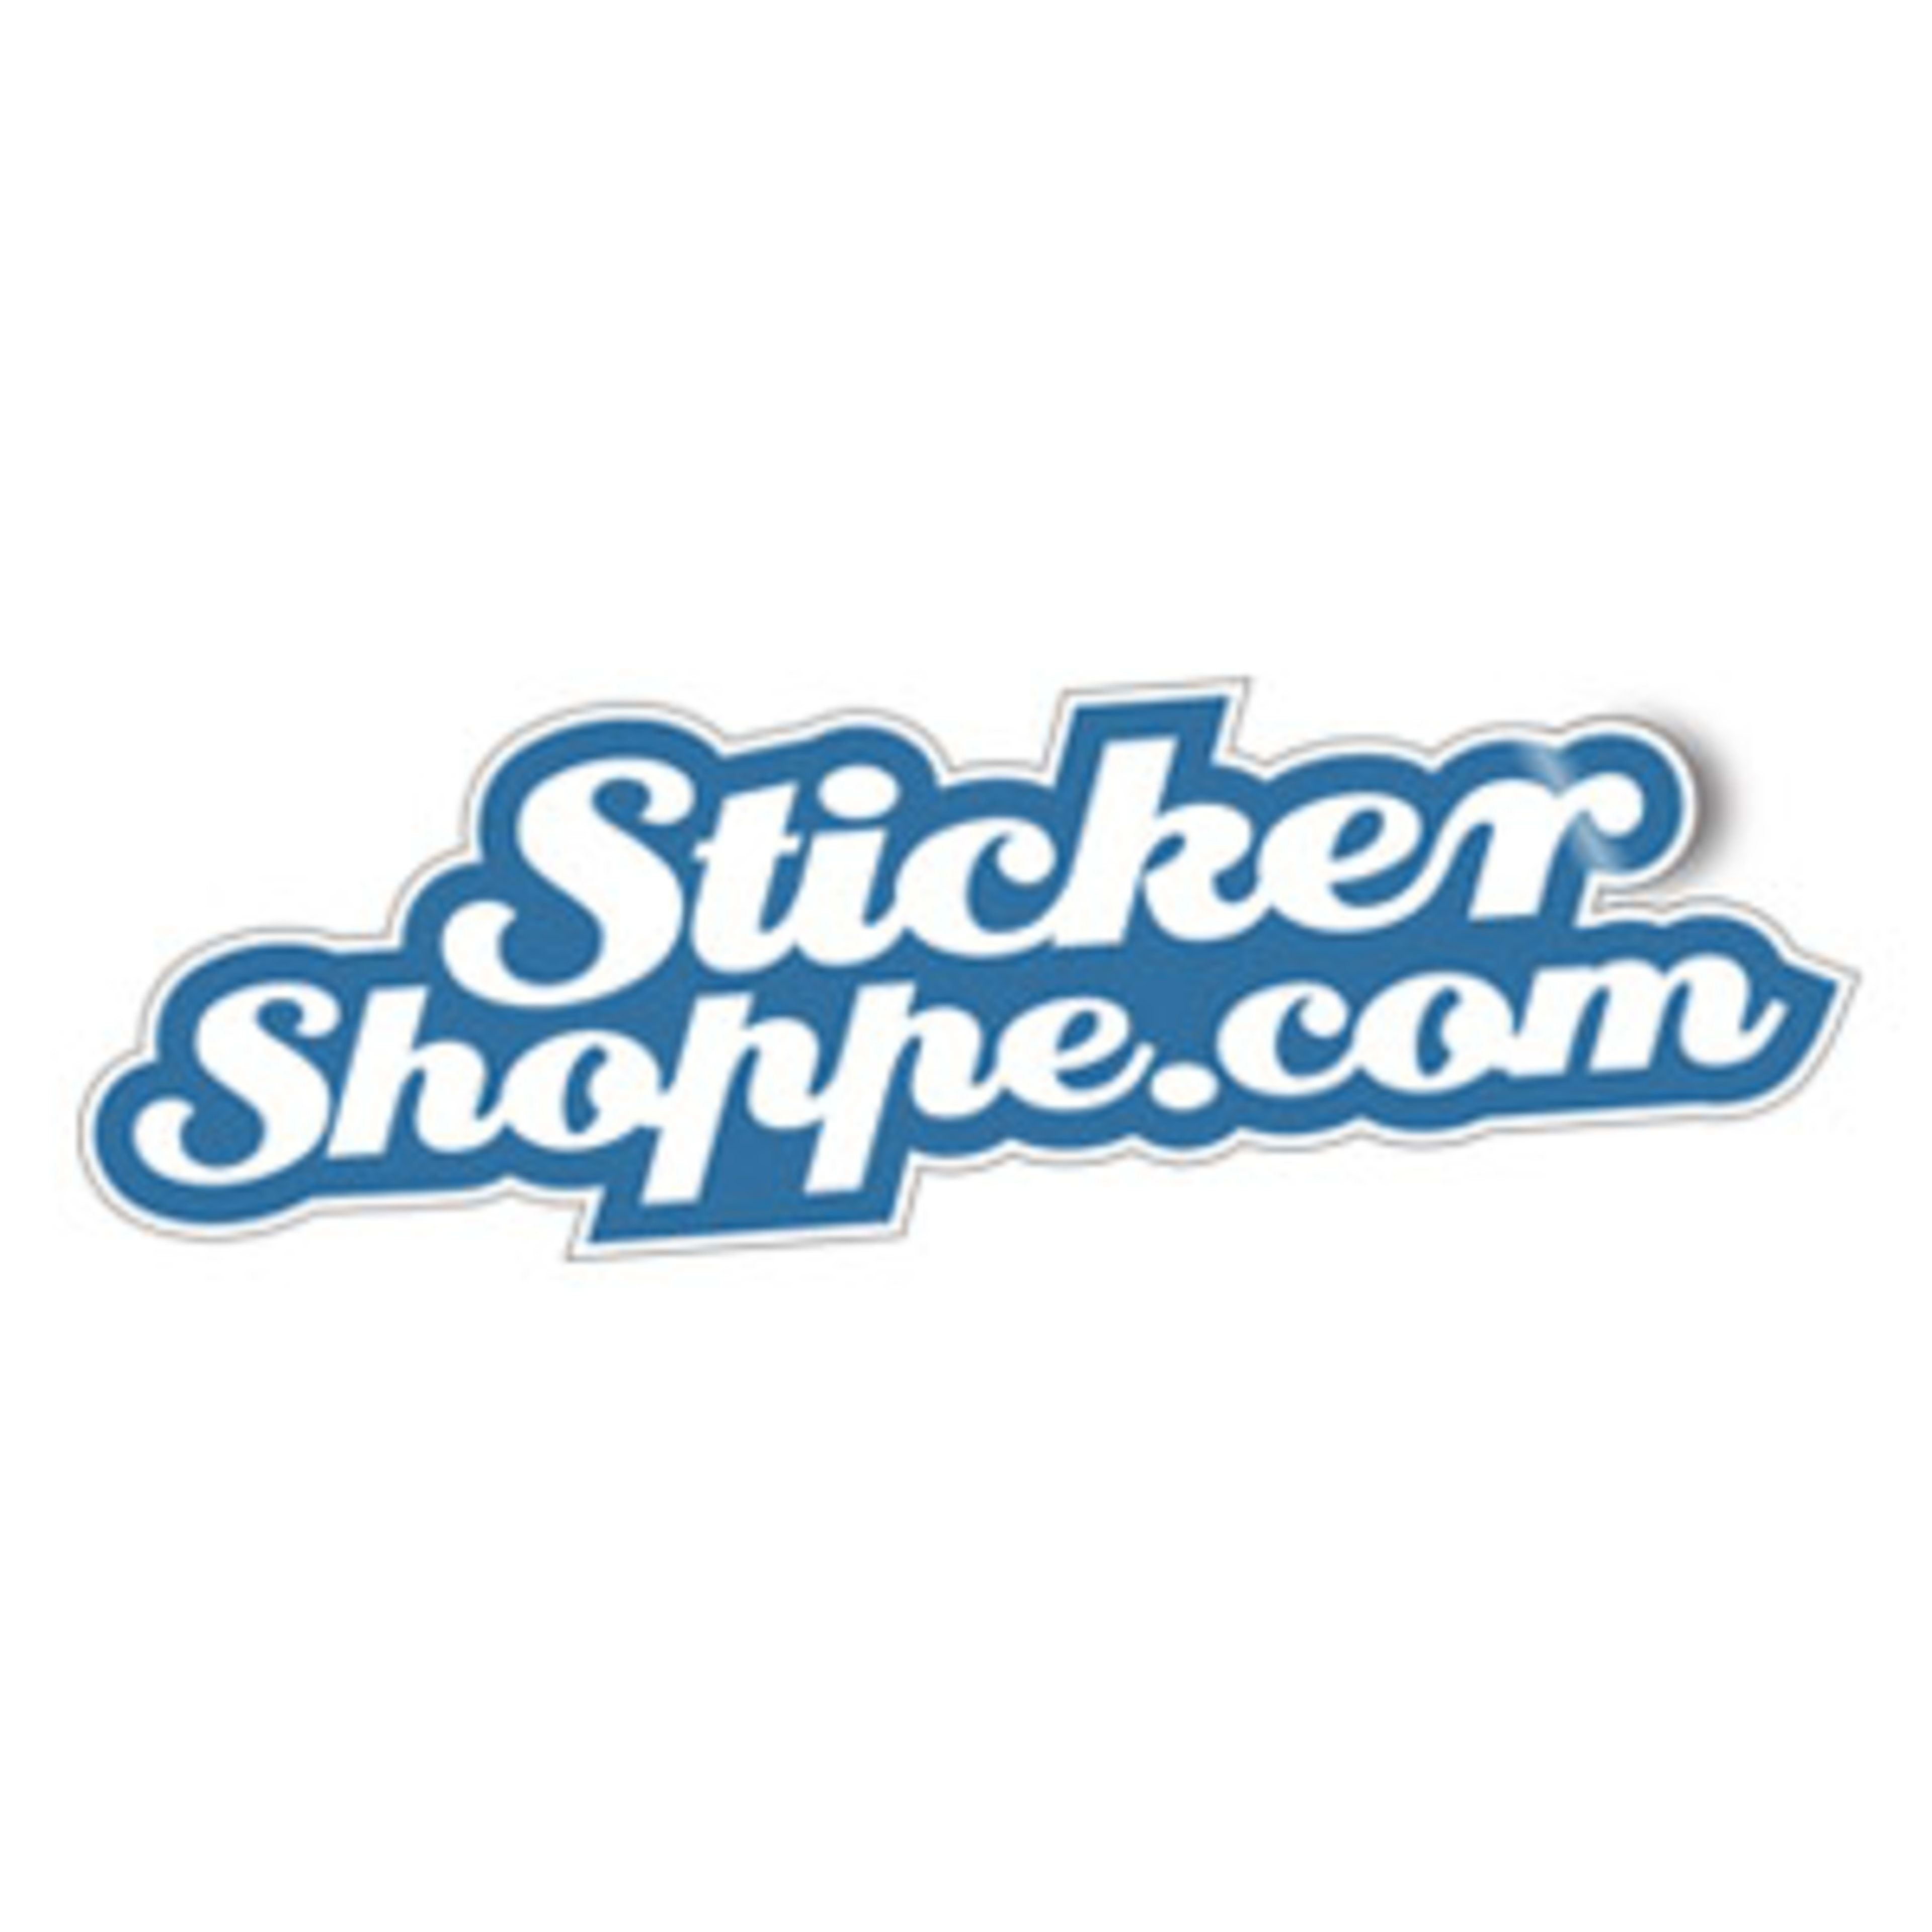 StickerShoppe.com Code